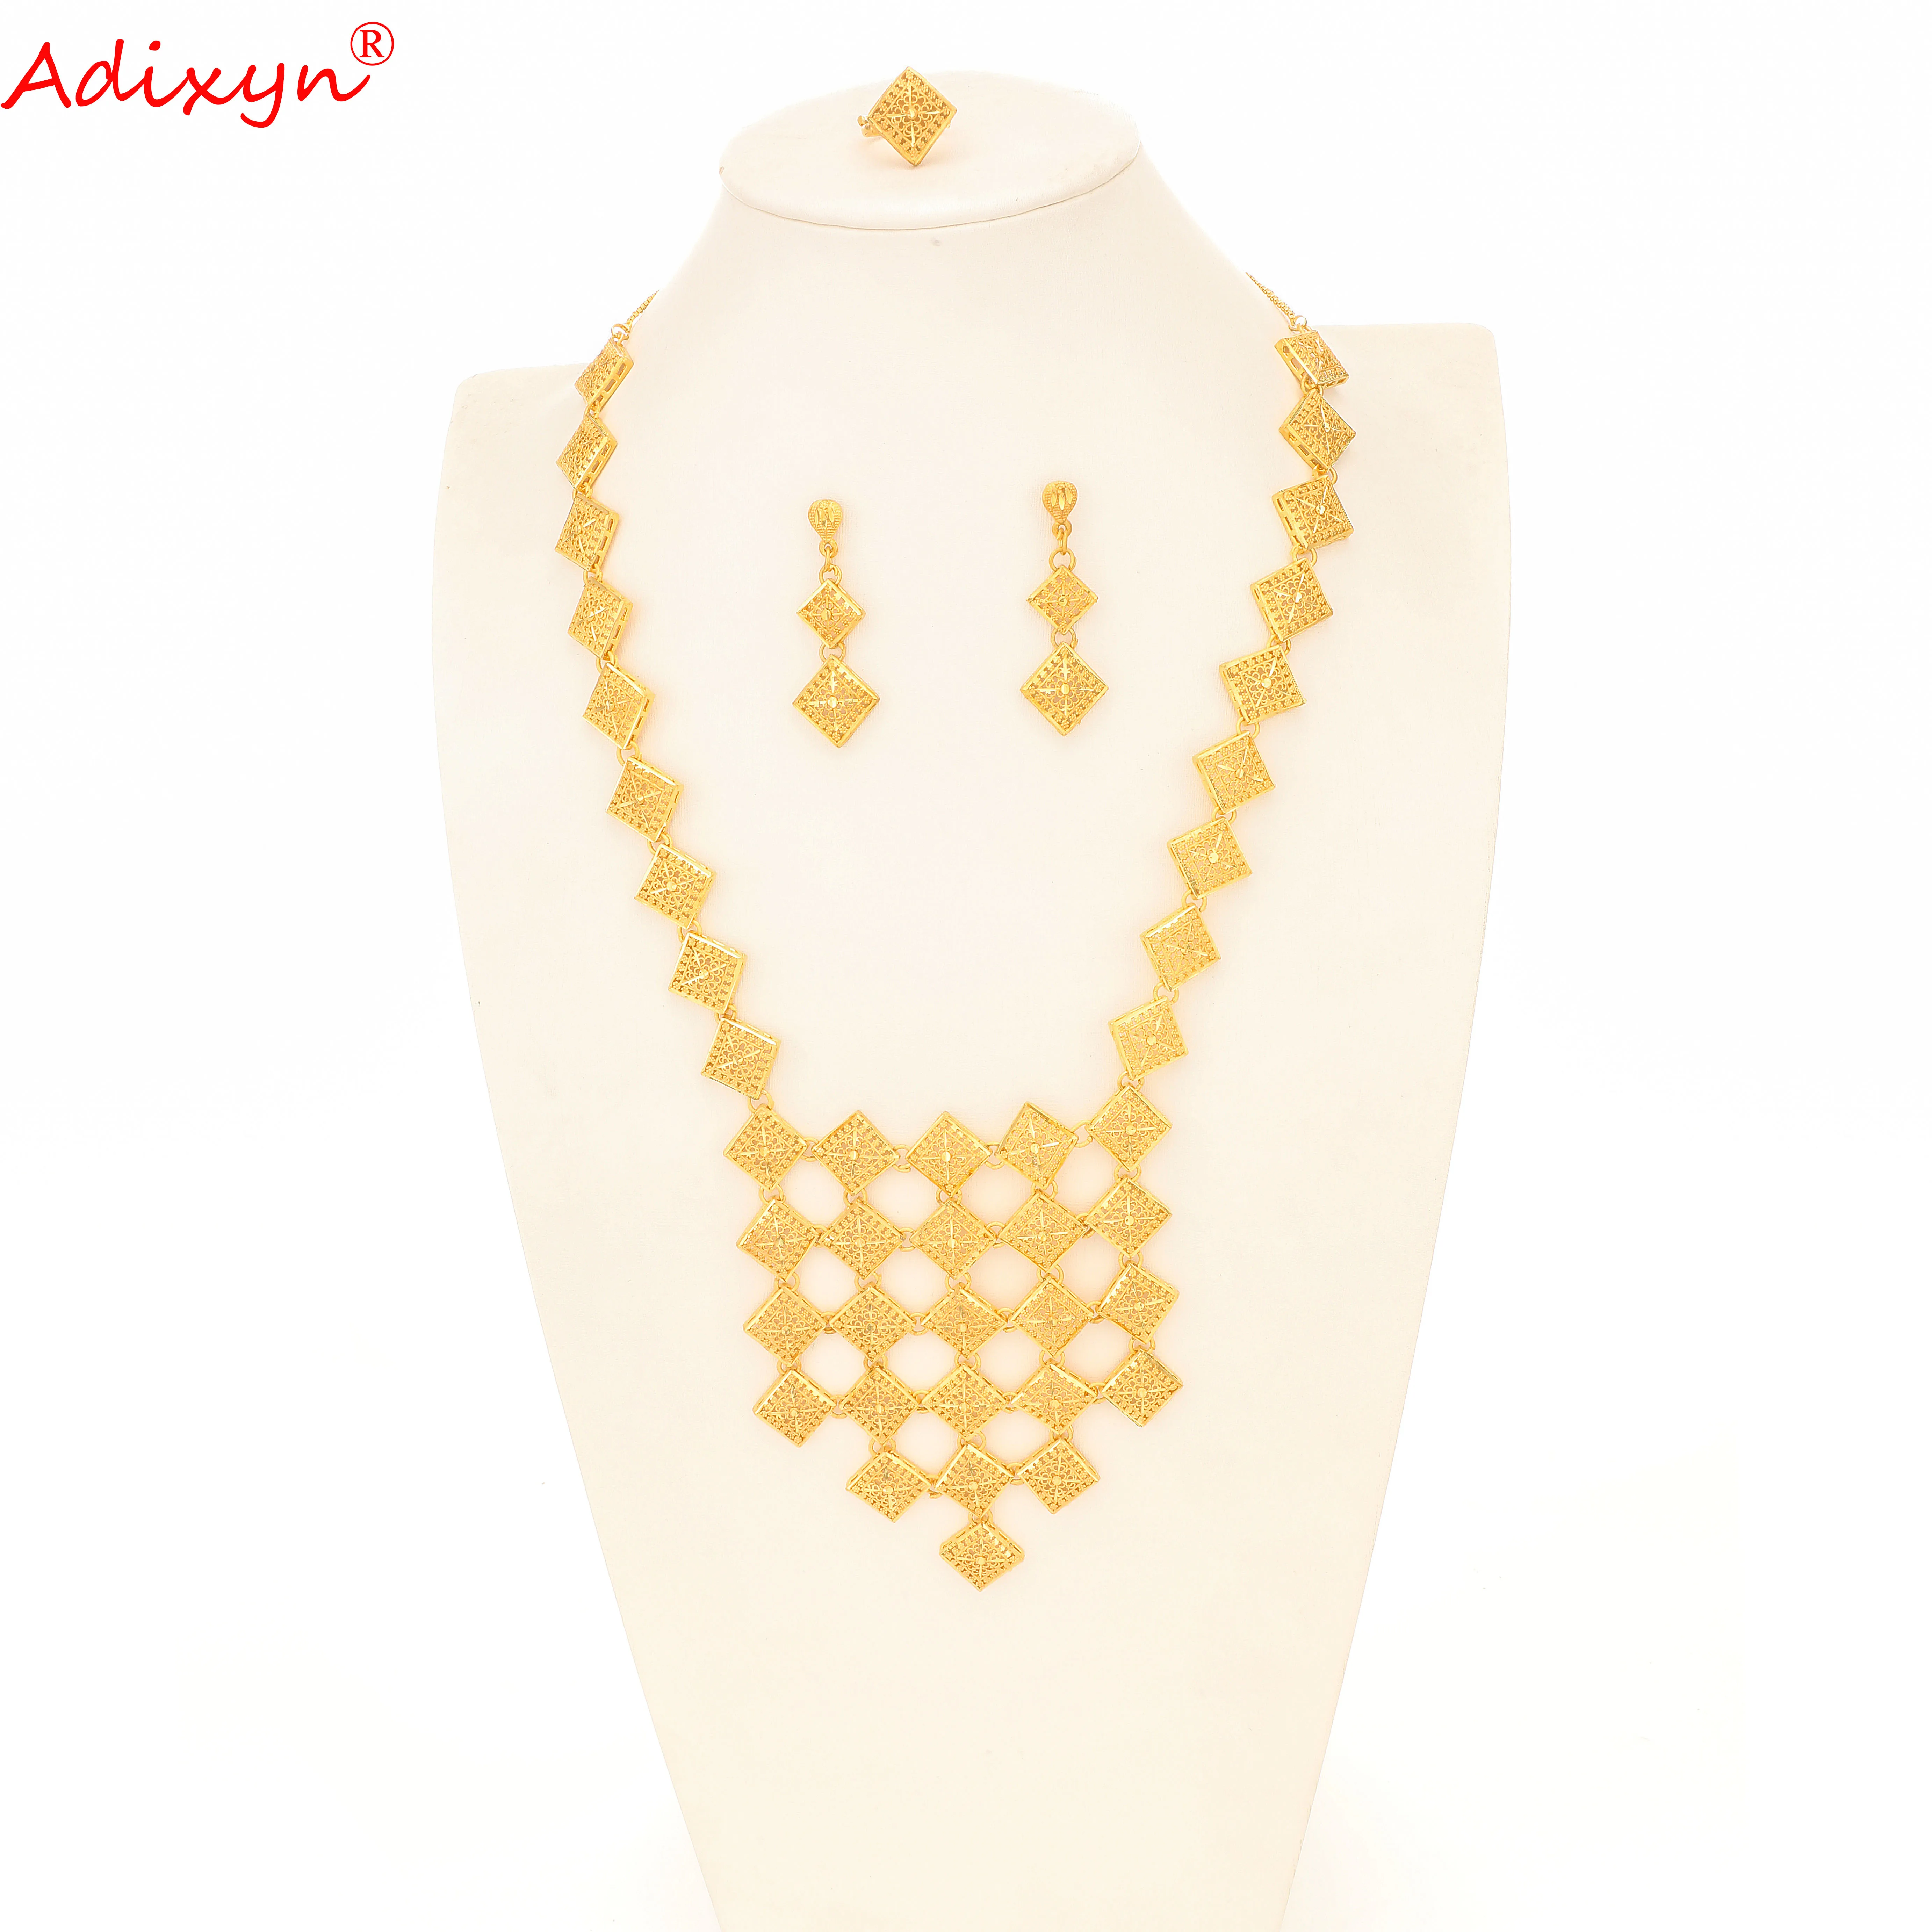 Adixyn 24K золото Цвет/медь Нигерия ожерелье/серьги набор украшений для женщин/девочек африканские/эфиопские/Дубай вечерние подарки N1021E3